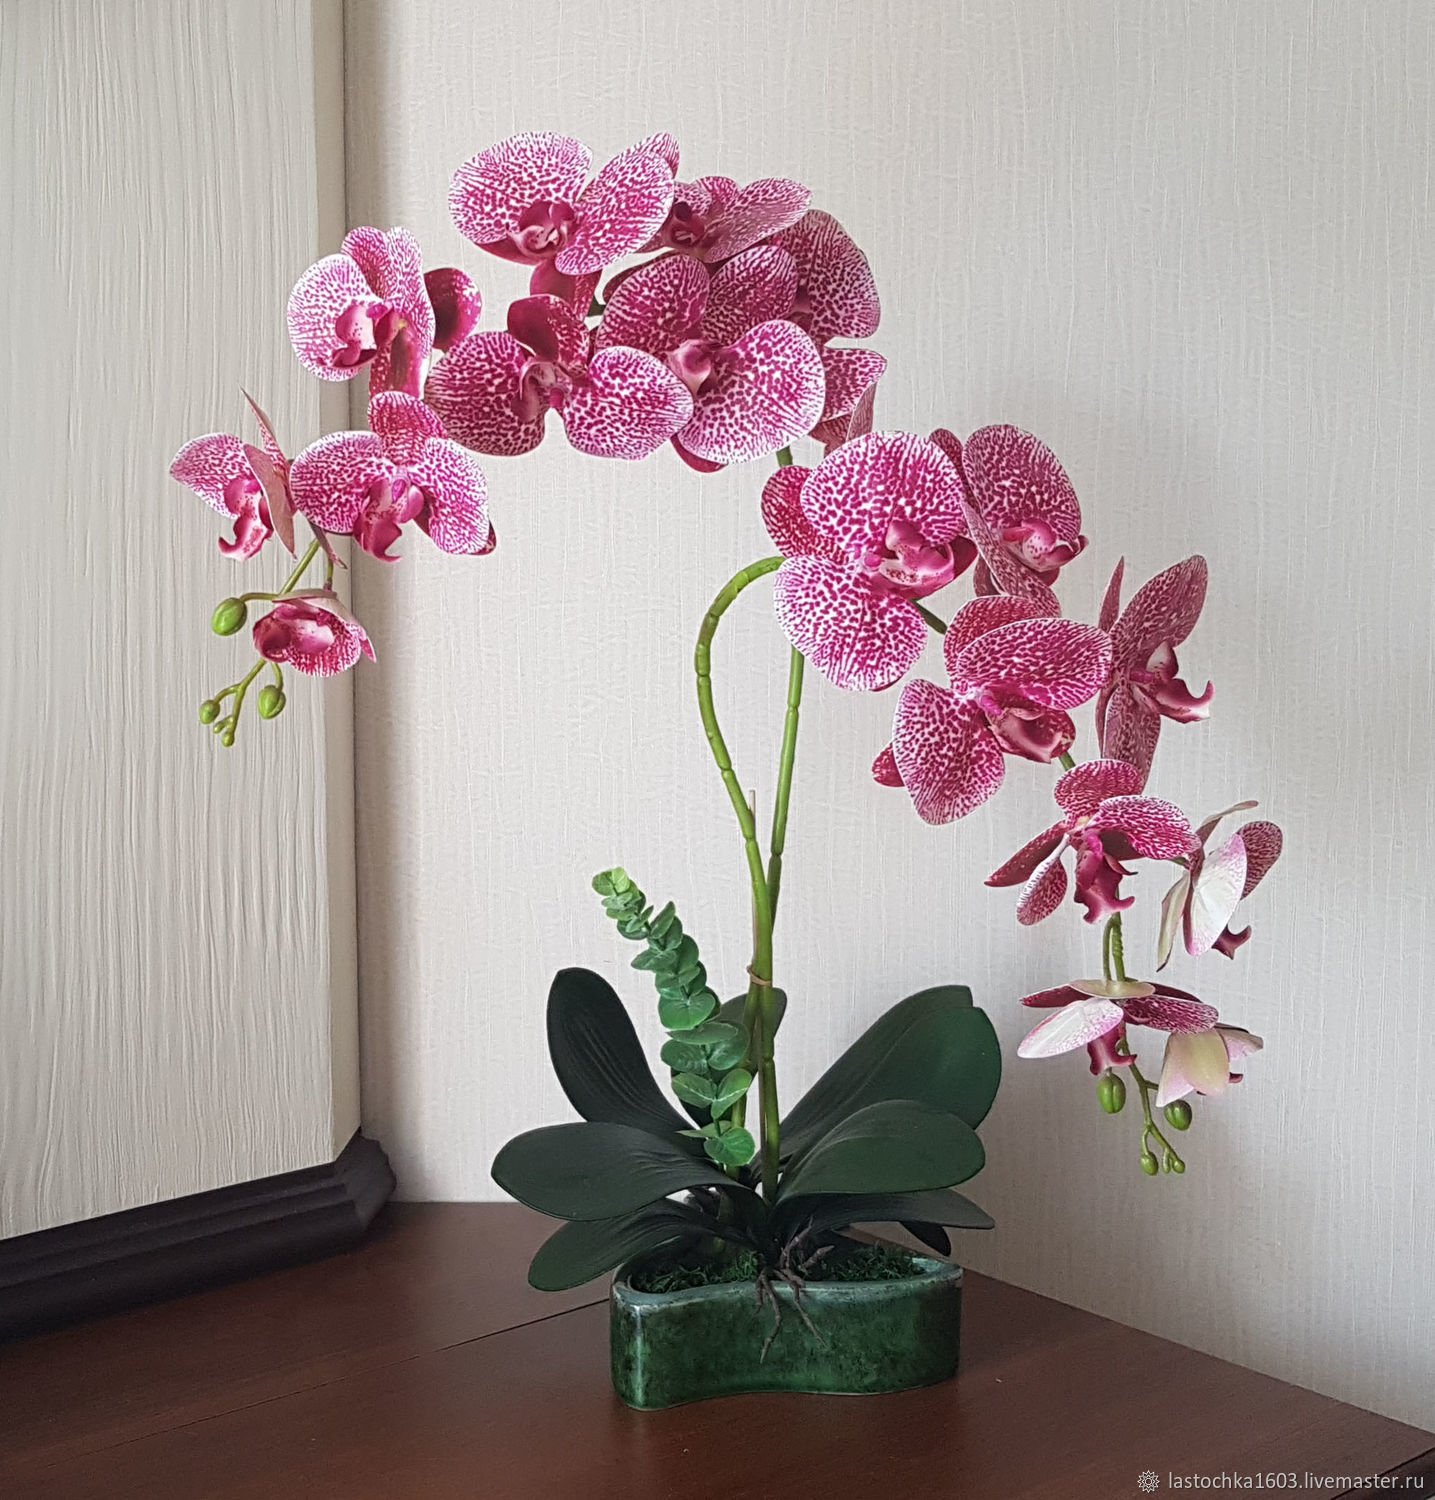 Купить орхидею в саратове. Орхидея фаленопсис. Anastasia фаленопсис. Орхидея фаленопсис Anastasia. Фаленопсис Nile.